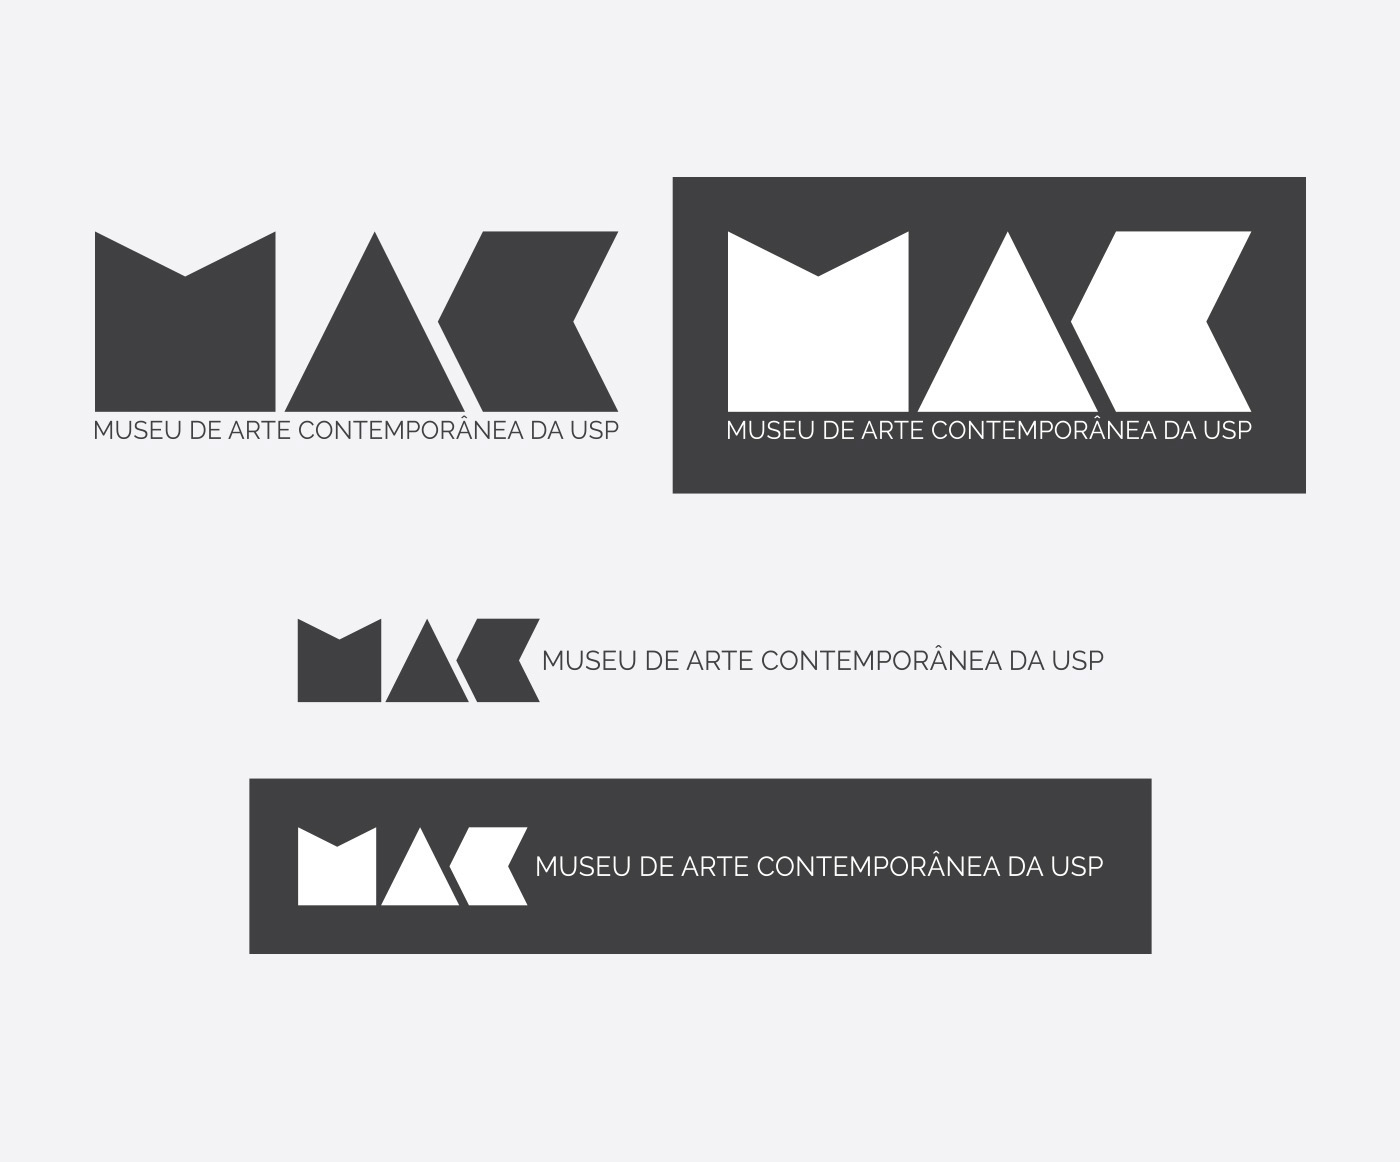 MAC USP Museu de Arte Indentidade Visual Logotipo visual identity redesign são paulo arte contemporanea comunicação visual Art museum contemporary art signaling cultura culture branding 